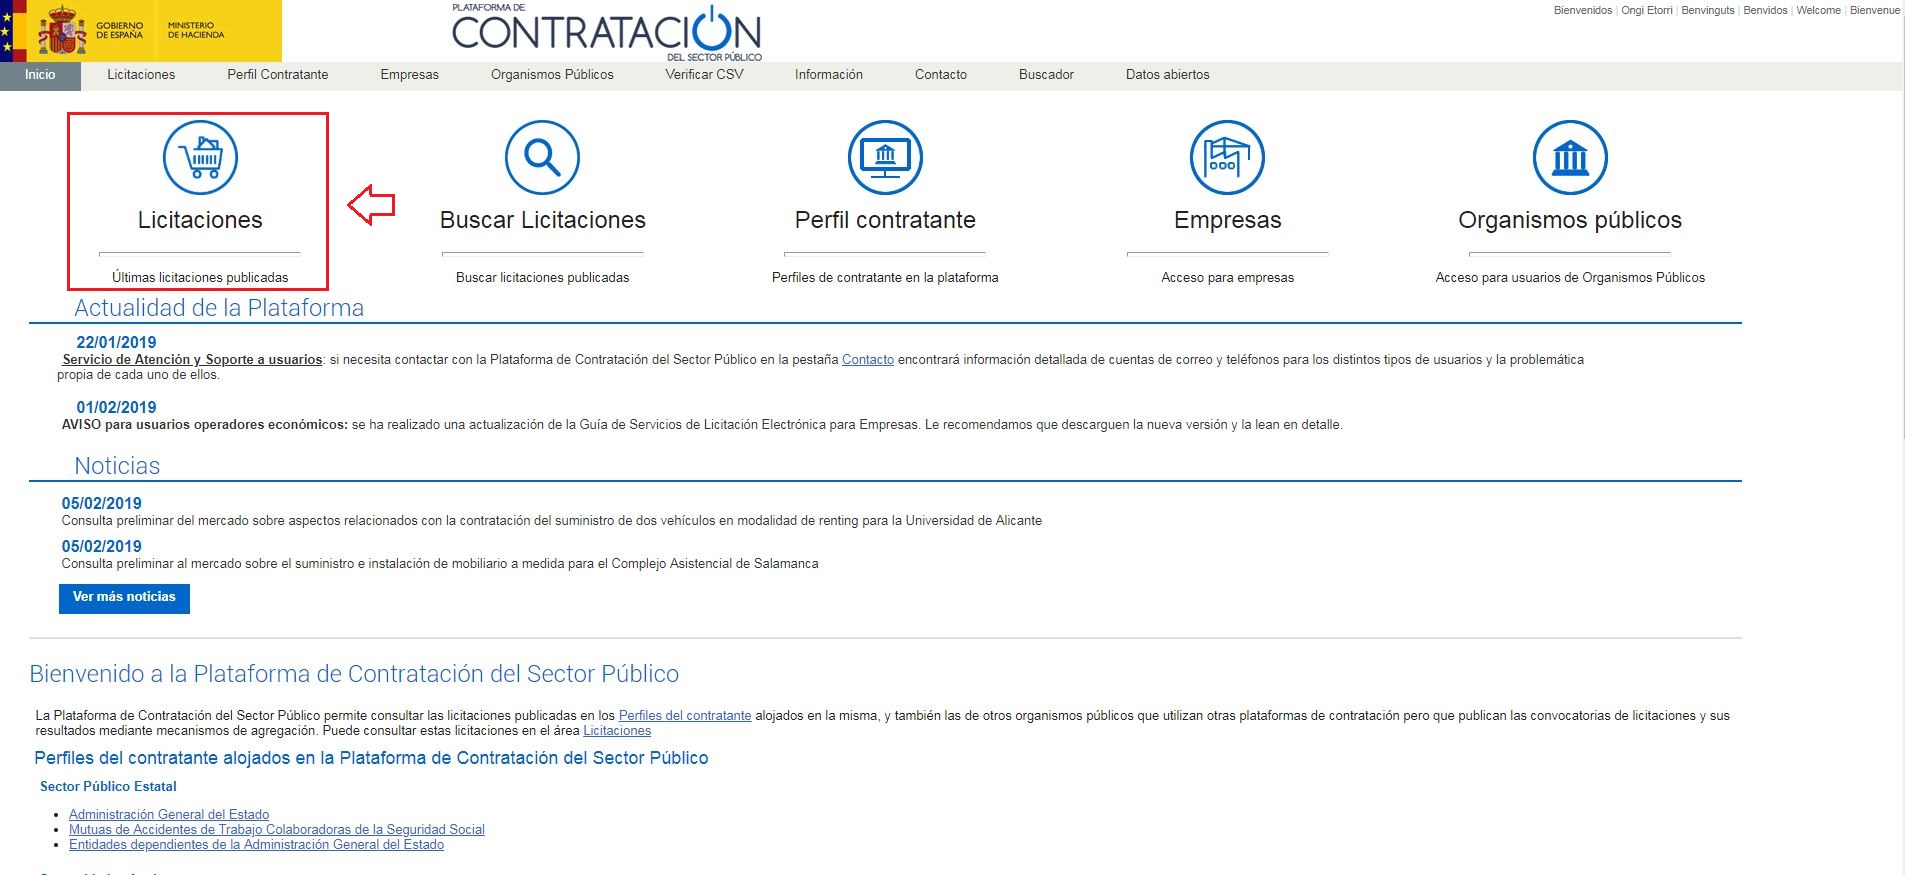 Captura de pantalla da Plataforma de Contratación coa opción 'Licitaciións' seleccionada